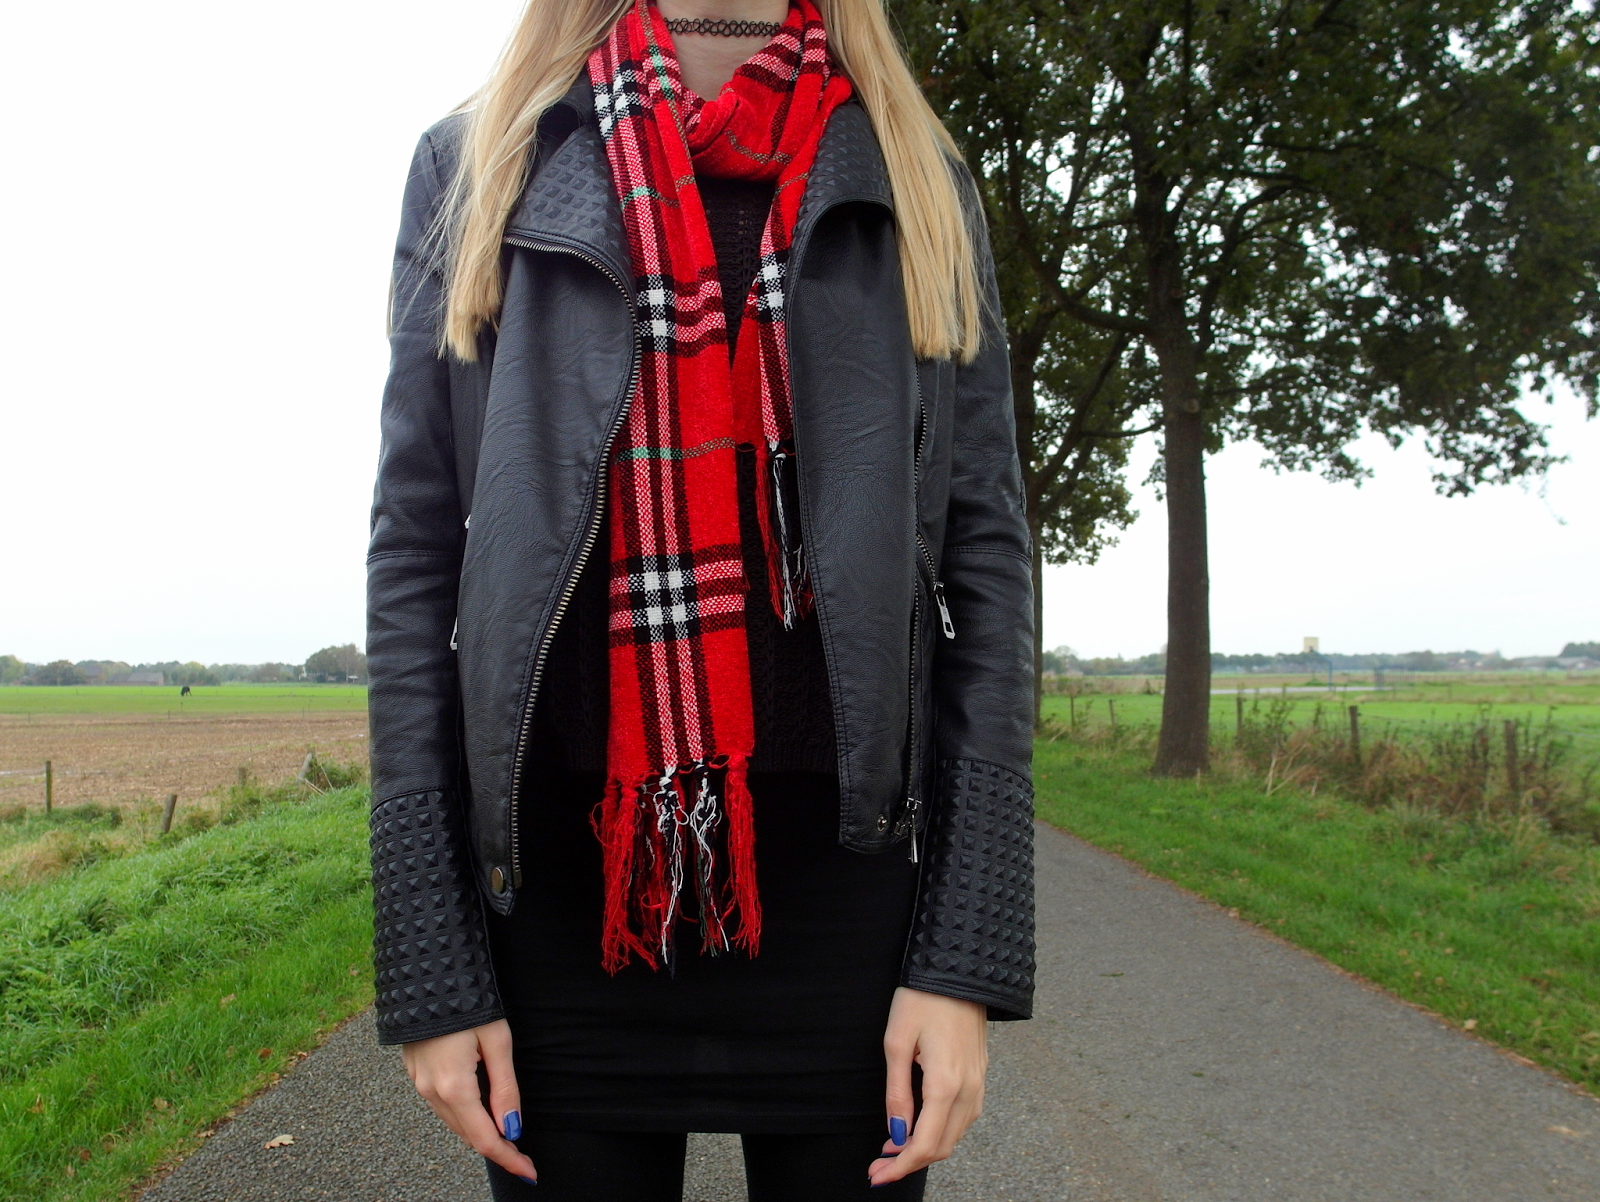 Tweedehands geruite sjaal met ruitjes rood zwarte outfit inspiratie herfst